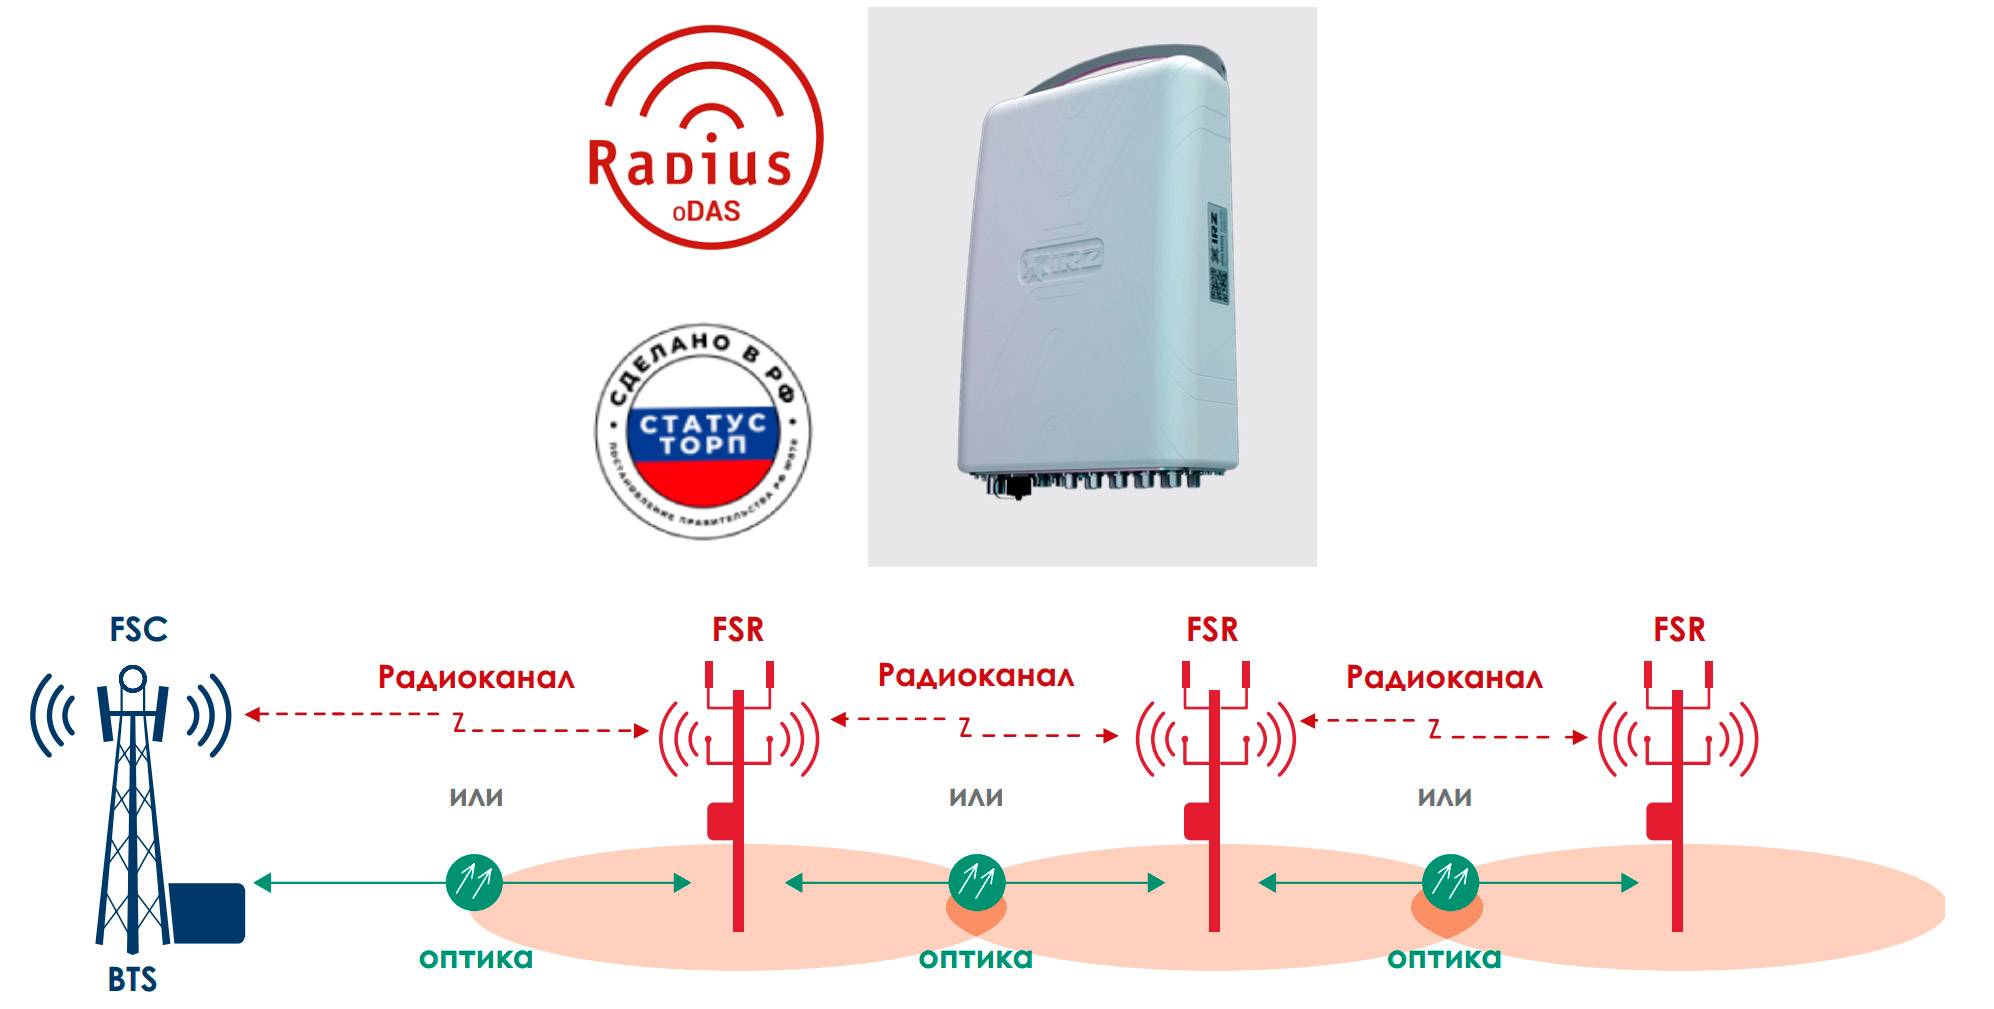 Внешняя распределенная антенная система RADIUS (oDAS)